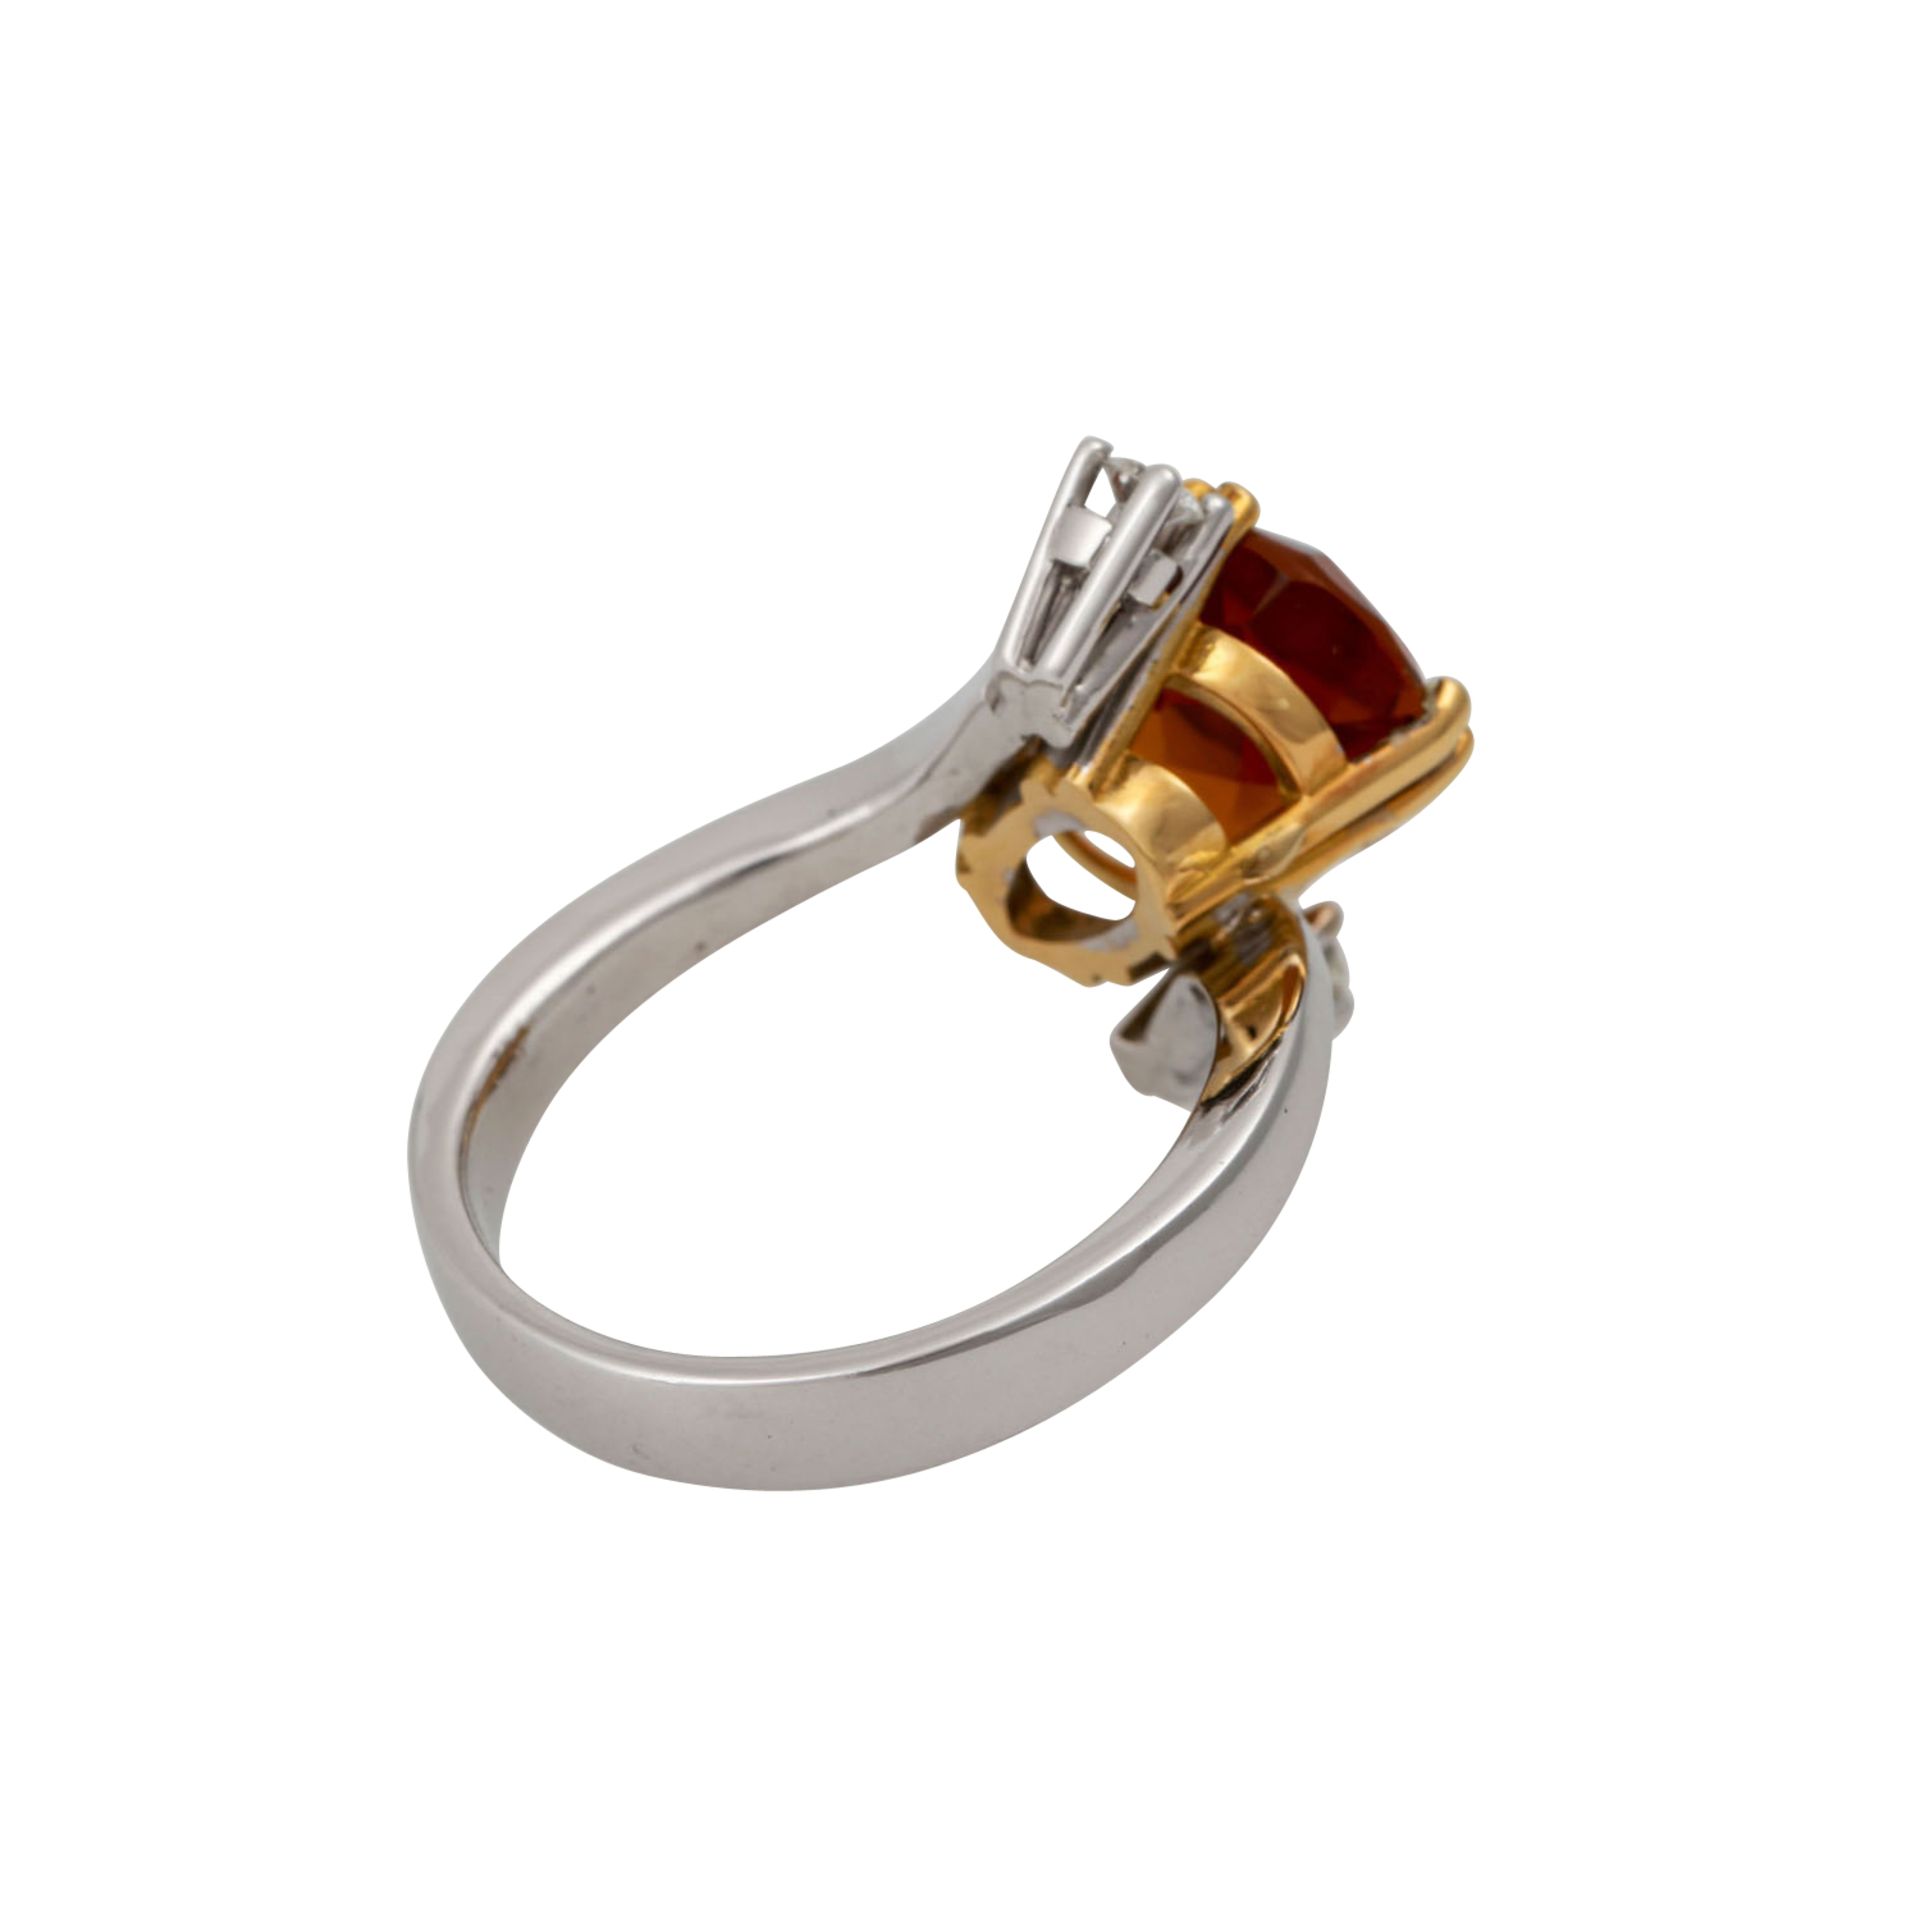 Ring mit oval facettiertem Citrin und 2 Brillanten, zus. ca. 0,18 ct,NP: 1.820 €, GG/WG 18K, 8,9 - Bild 3 aus 4